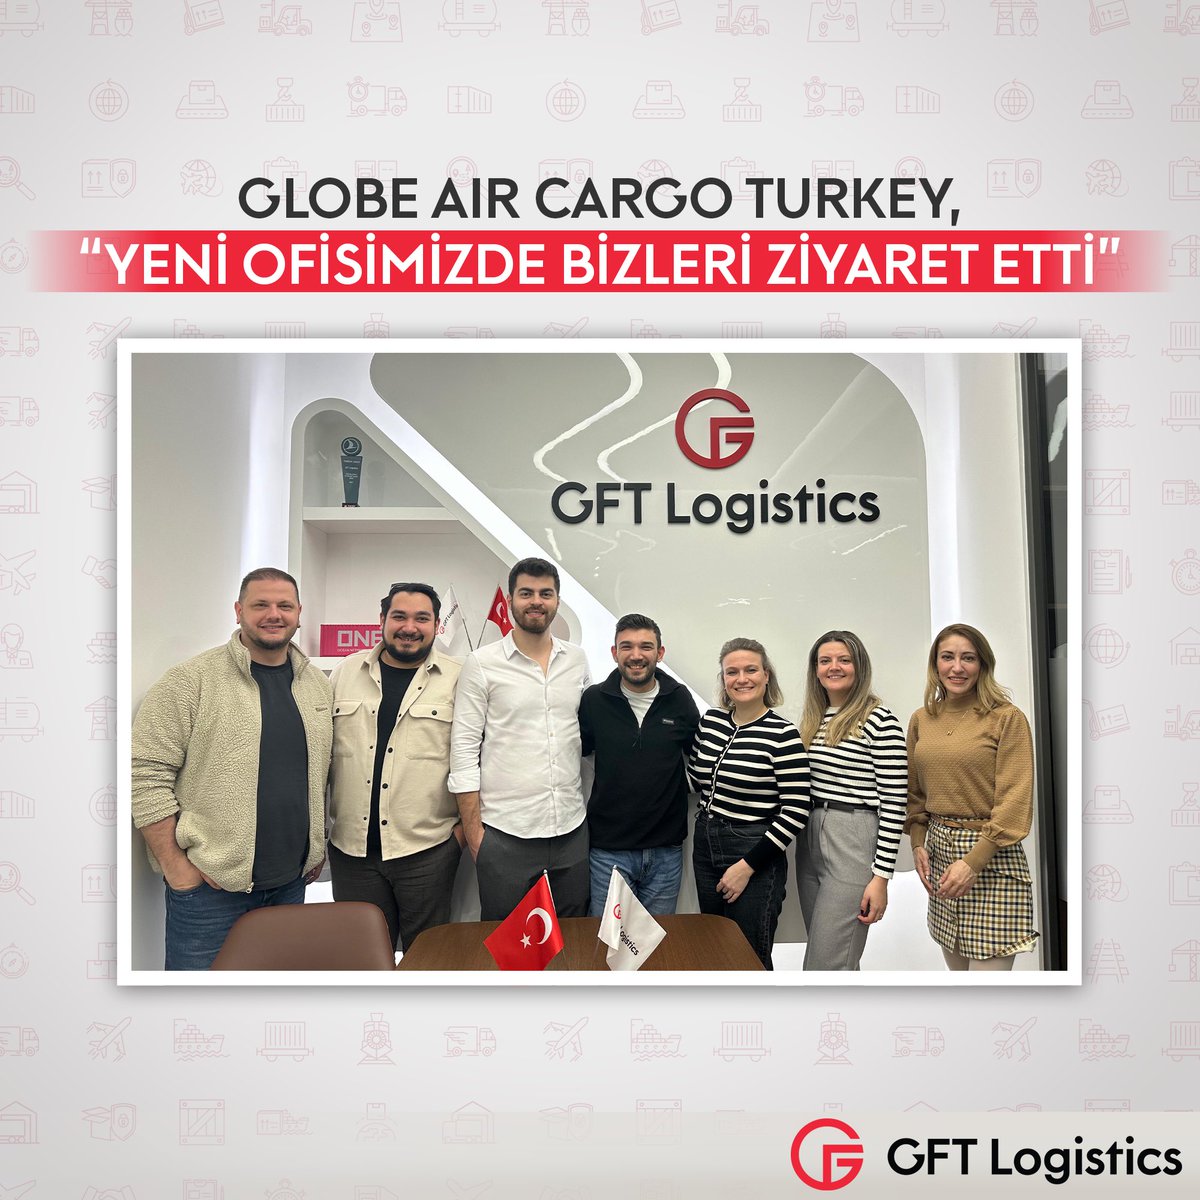 ✈️ GLOBE AIR CARGO TURKEY, YENİ OFİSİMİZDE BİZLERİ ZİYARET ETTİ! GFT Lojistik olarak, sektördeki iş ortaklarımızla sürekli iletişim ve işbirliği içinde olmanın önemine inanıyoruz. Birlikte daha yükseklere uçmaya hazırız!🚀#internationaltransport #logistics